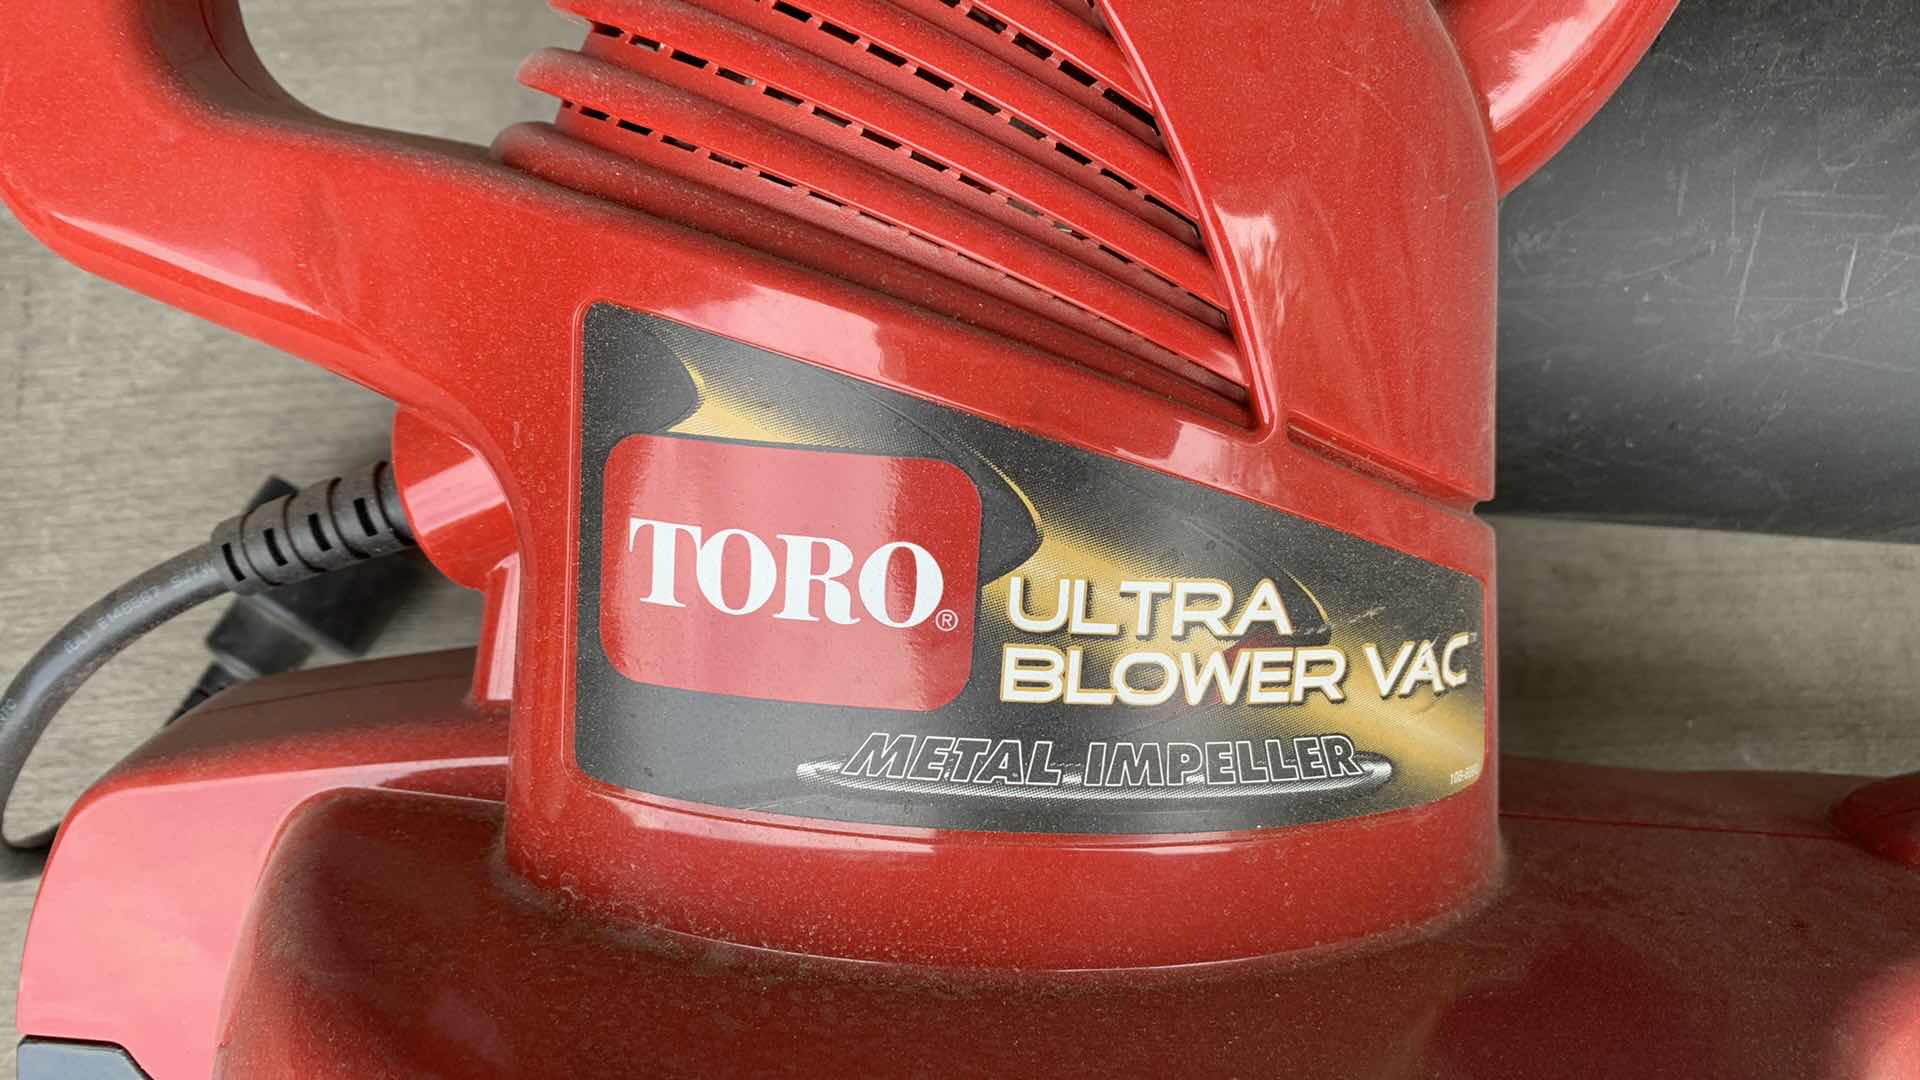 Photo 3 of TORO ULTRA BLOWER VAC